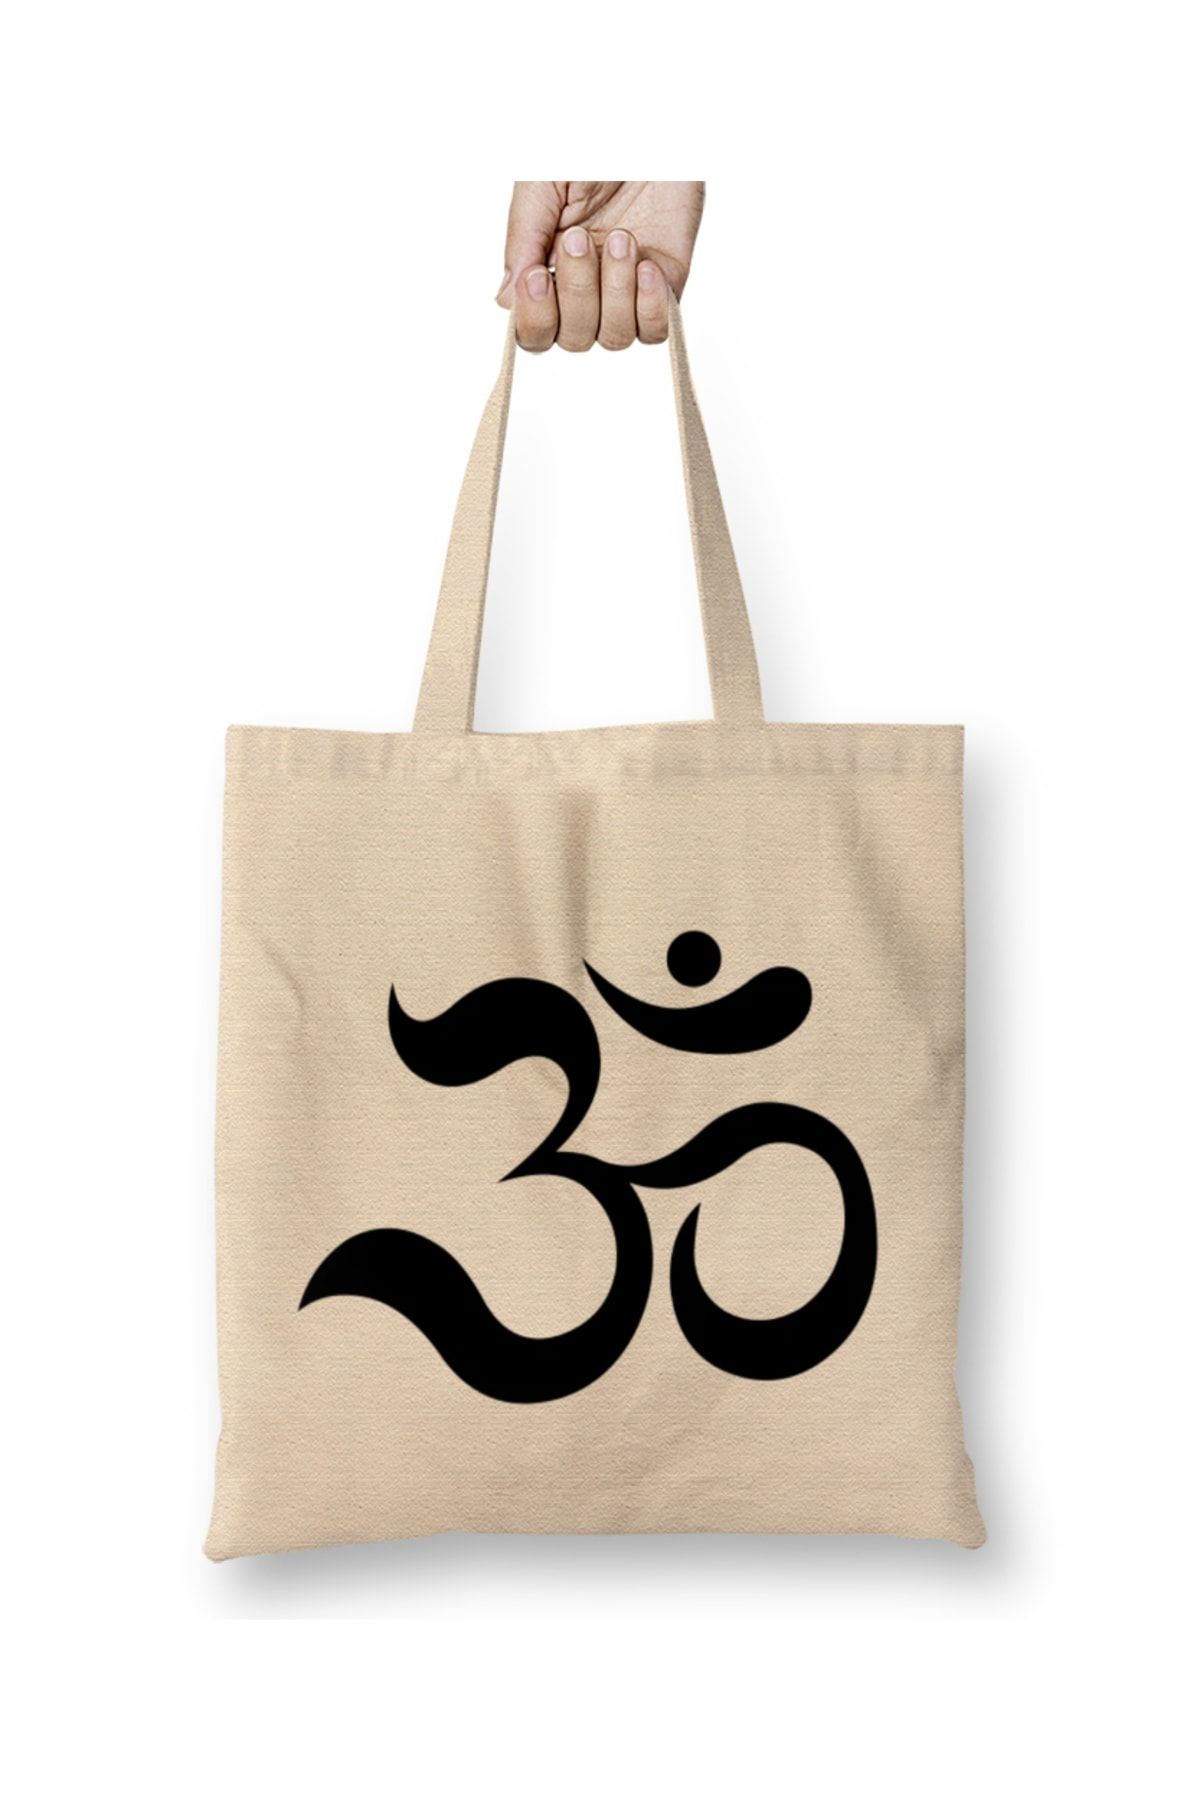 Baskı Dükkanı Om Ohm Aum Symbol Spiritual Yoga Tote Bag Long Handle -  Trendyol